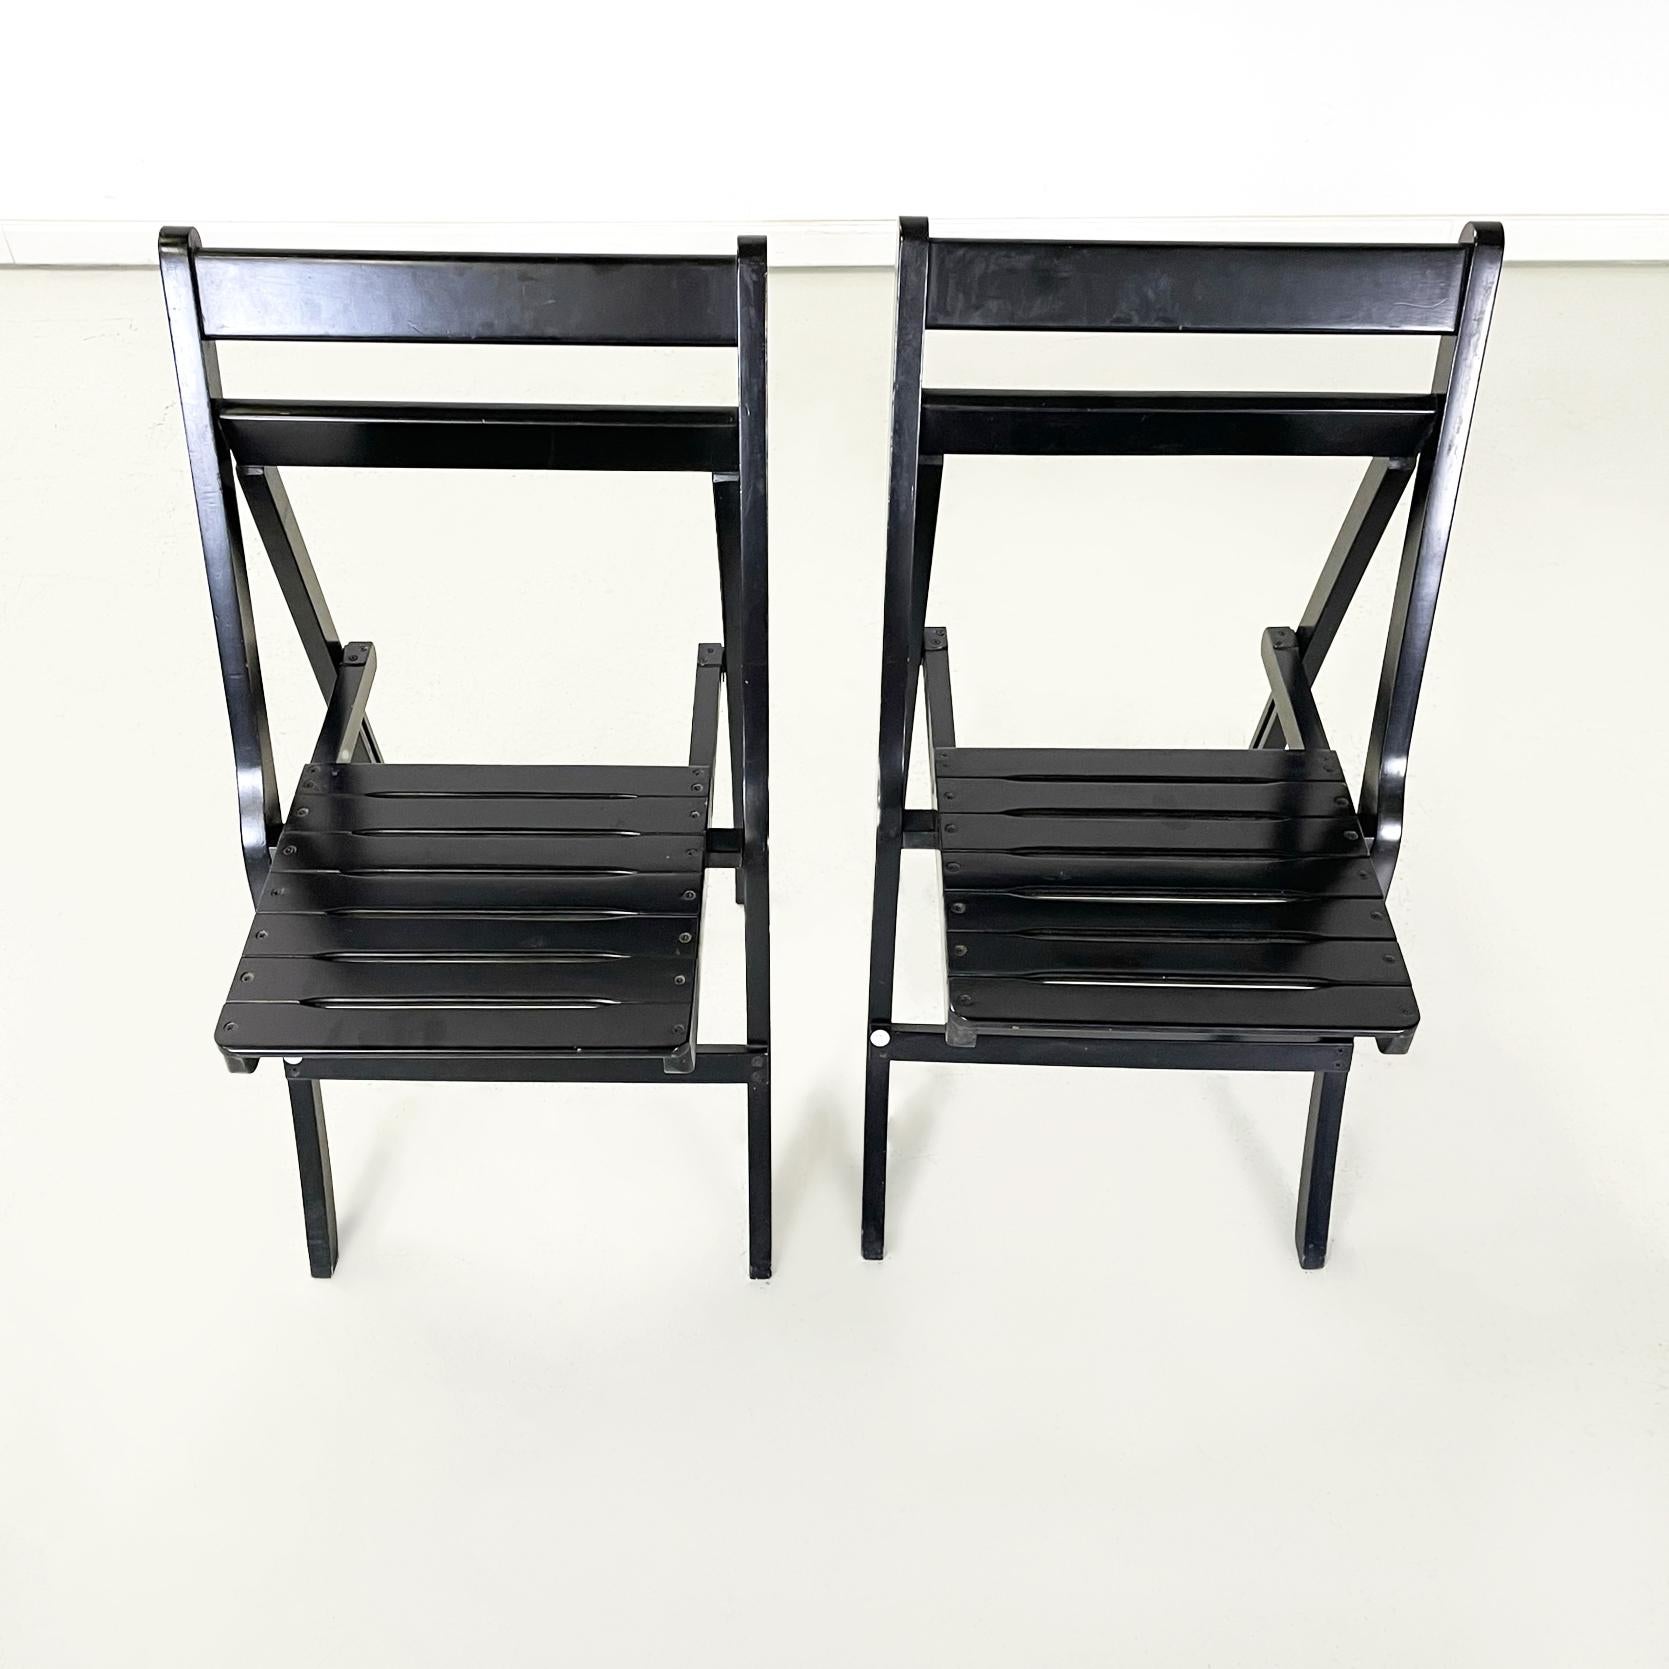 Chaises pliantes modernes italiennes en bois Morettina par Ettore Moretti pour Zanotta, 1970
Chaises pliantes mod. Morettina en bois peint en noir. Le dossier et l'assise sont constitués d'une série de lattes.
Produit par Zanotta dans les années